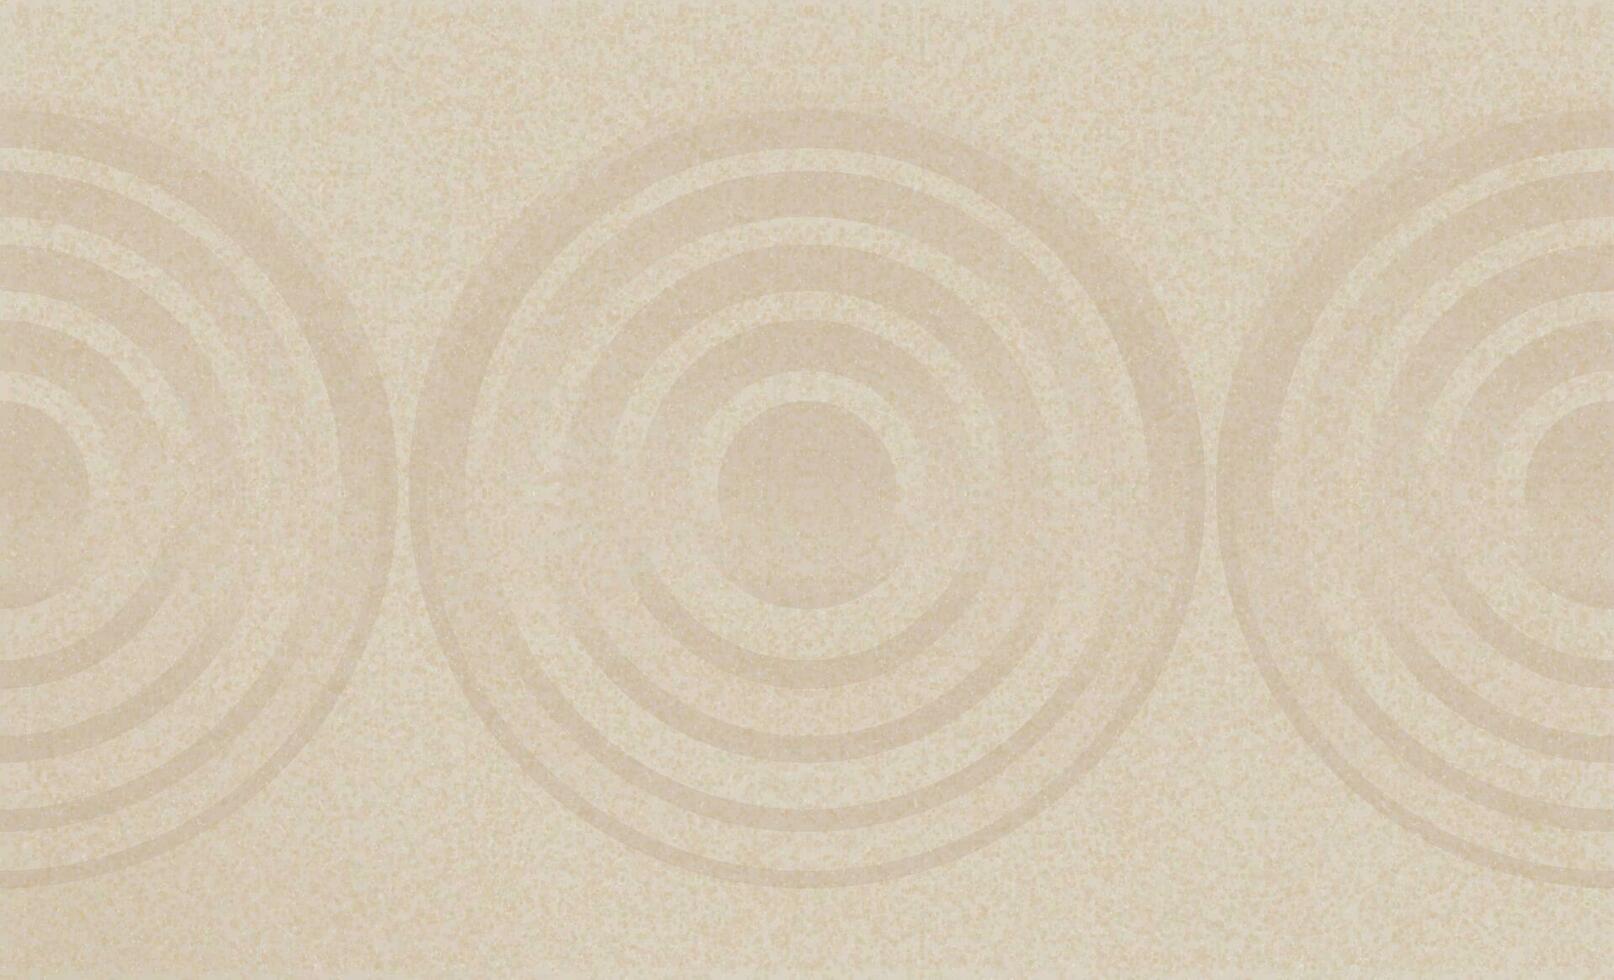 japonês zen jardim com concêntrico círculos e paralelo linhas em Castanho areia superfície fundo, areia textura com simples espiritual padrões, harmonia, meditação, zen gostar conceito vetor